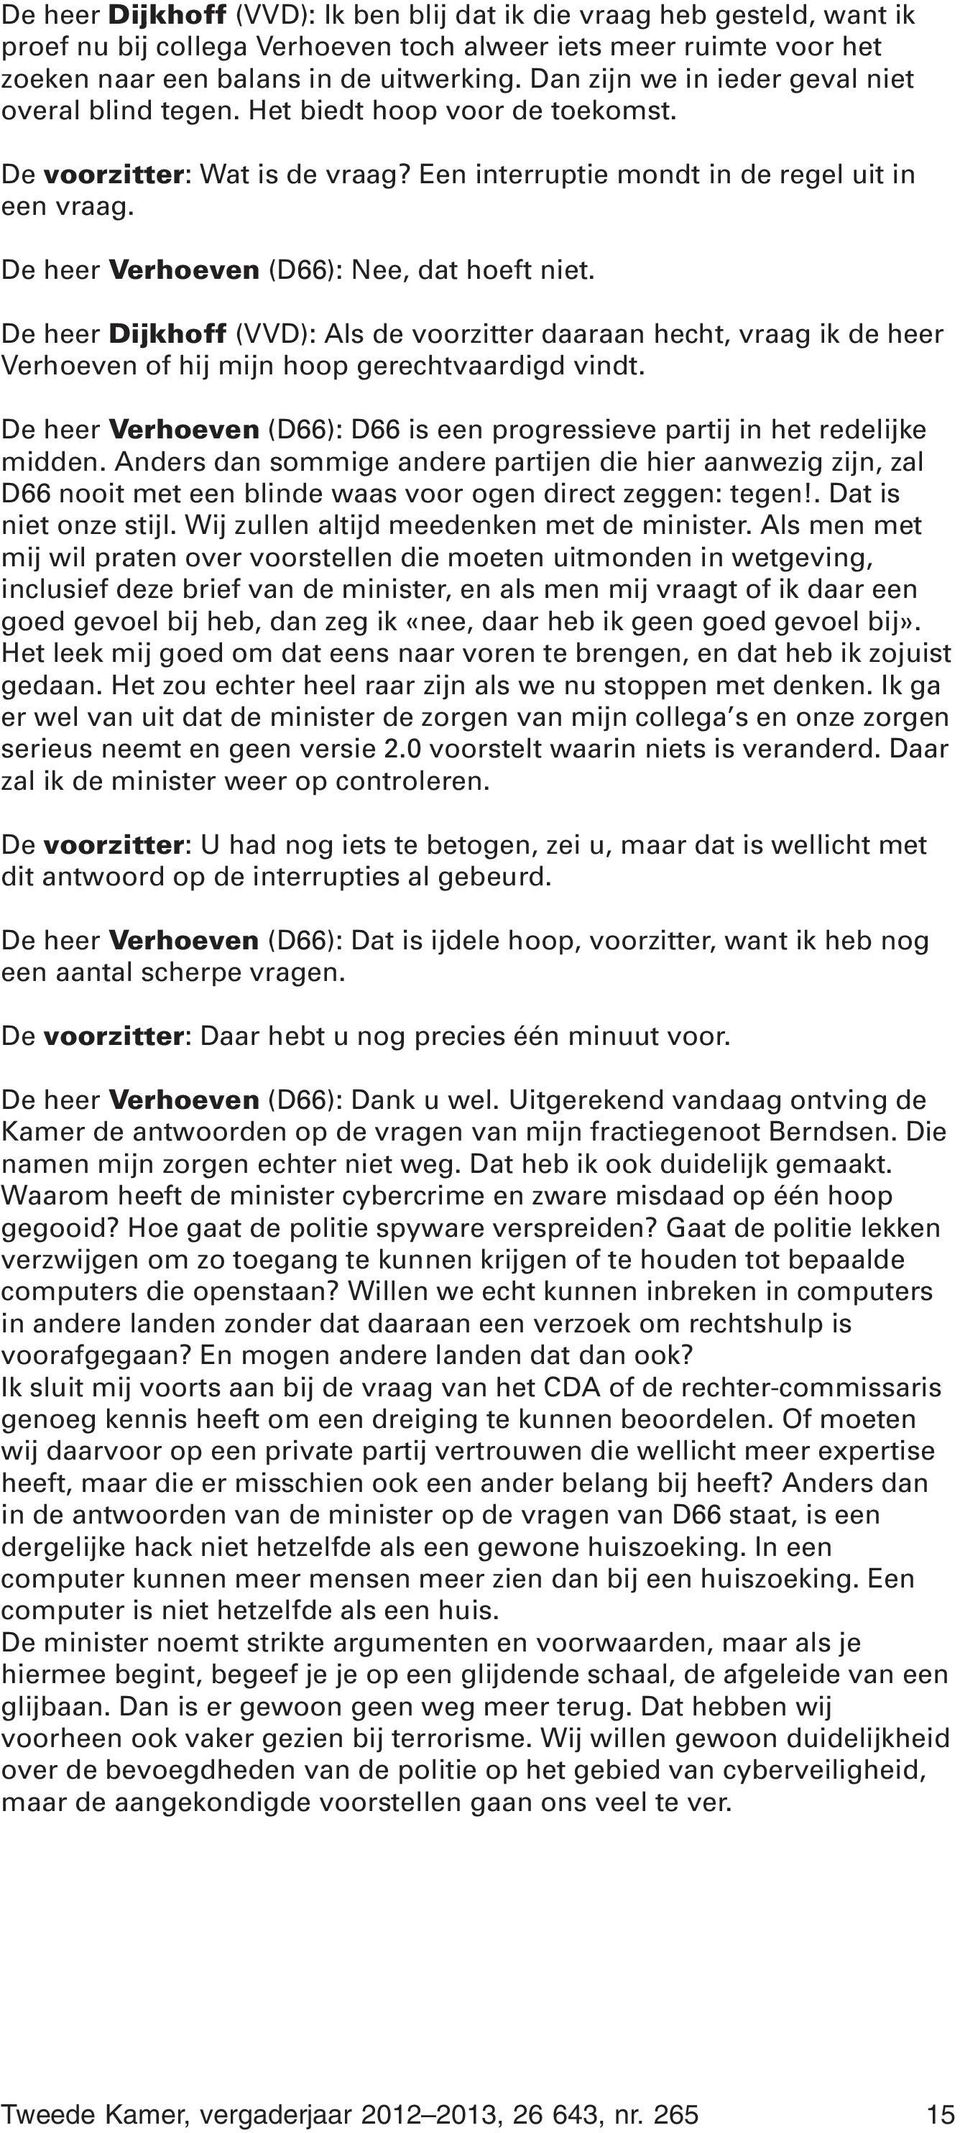 De heer Verhoeven (D66): Nee, dat hoeft niet. De heer Dijkhoff (VVD): Als de voorzitter daaraan hecht, vraag ik de heer Verhoeven of hij mijn hoop gerechtvaardigd vindt.